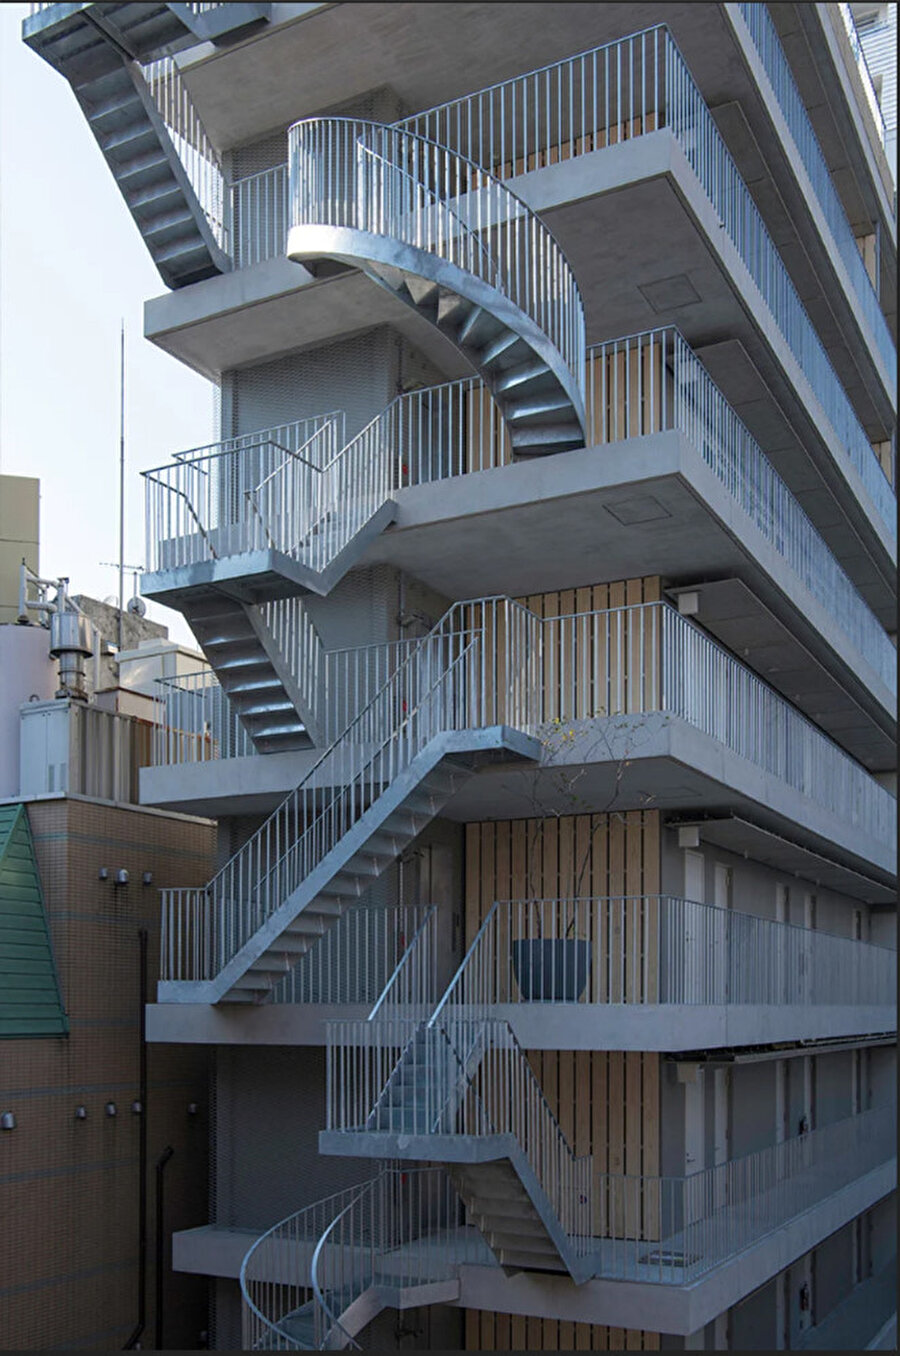 Otelin merdivenleri, her katta birbirinden farklı tasarımlarıyla sokaktan geçenlerin dikkatini çekiyor.